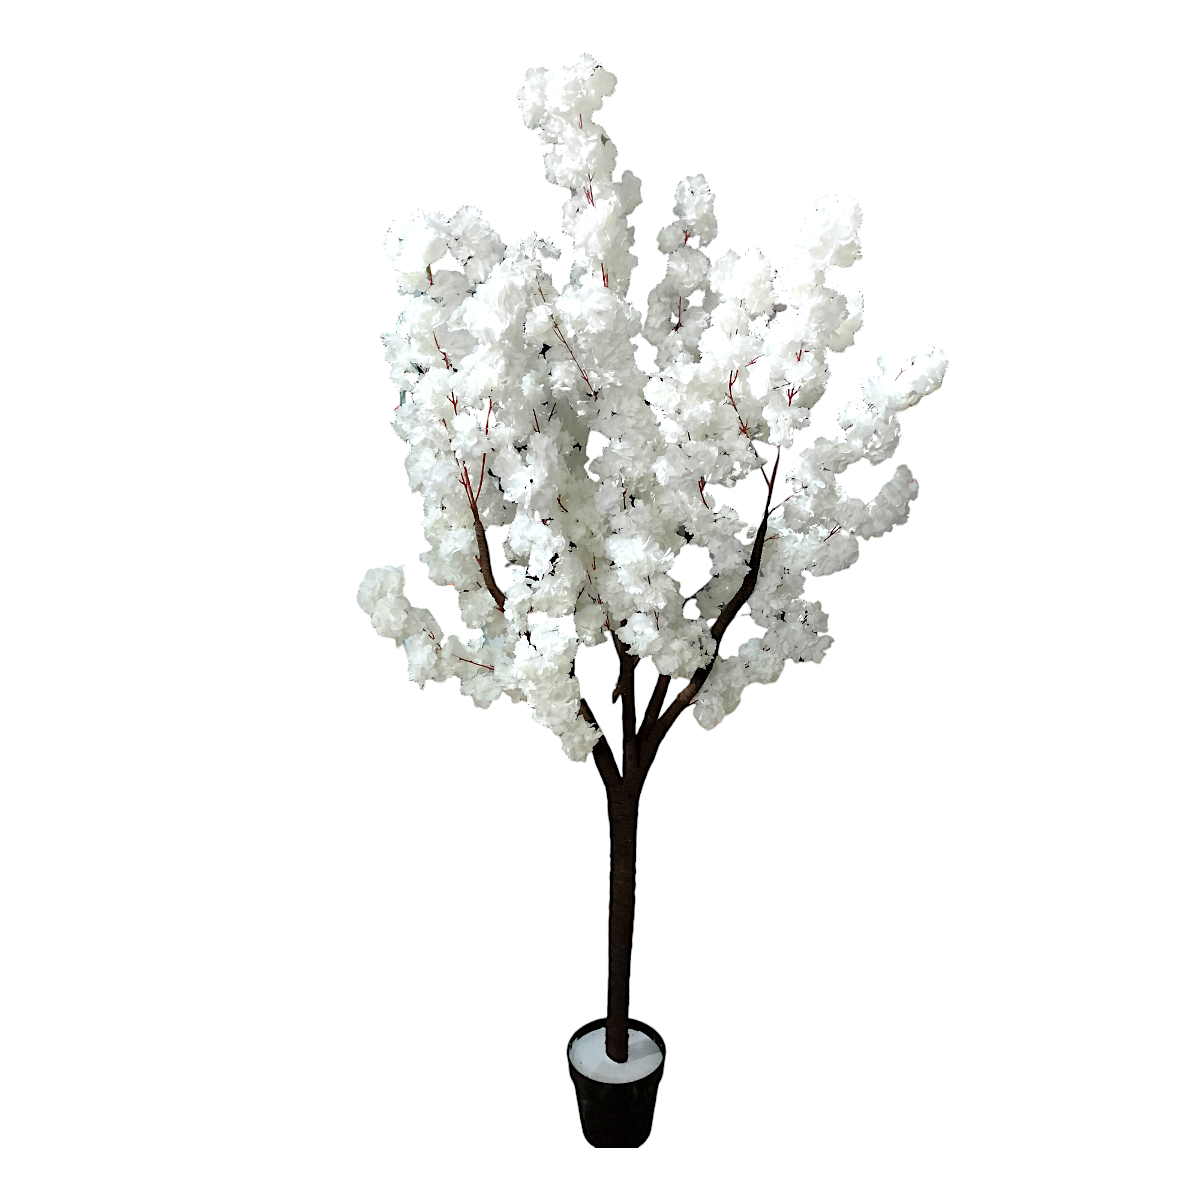 Los cerezos en flor, blanco, árbol de cerezo, flor, fruto, la